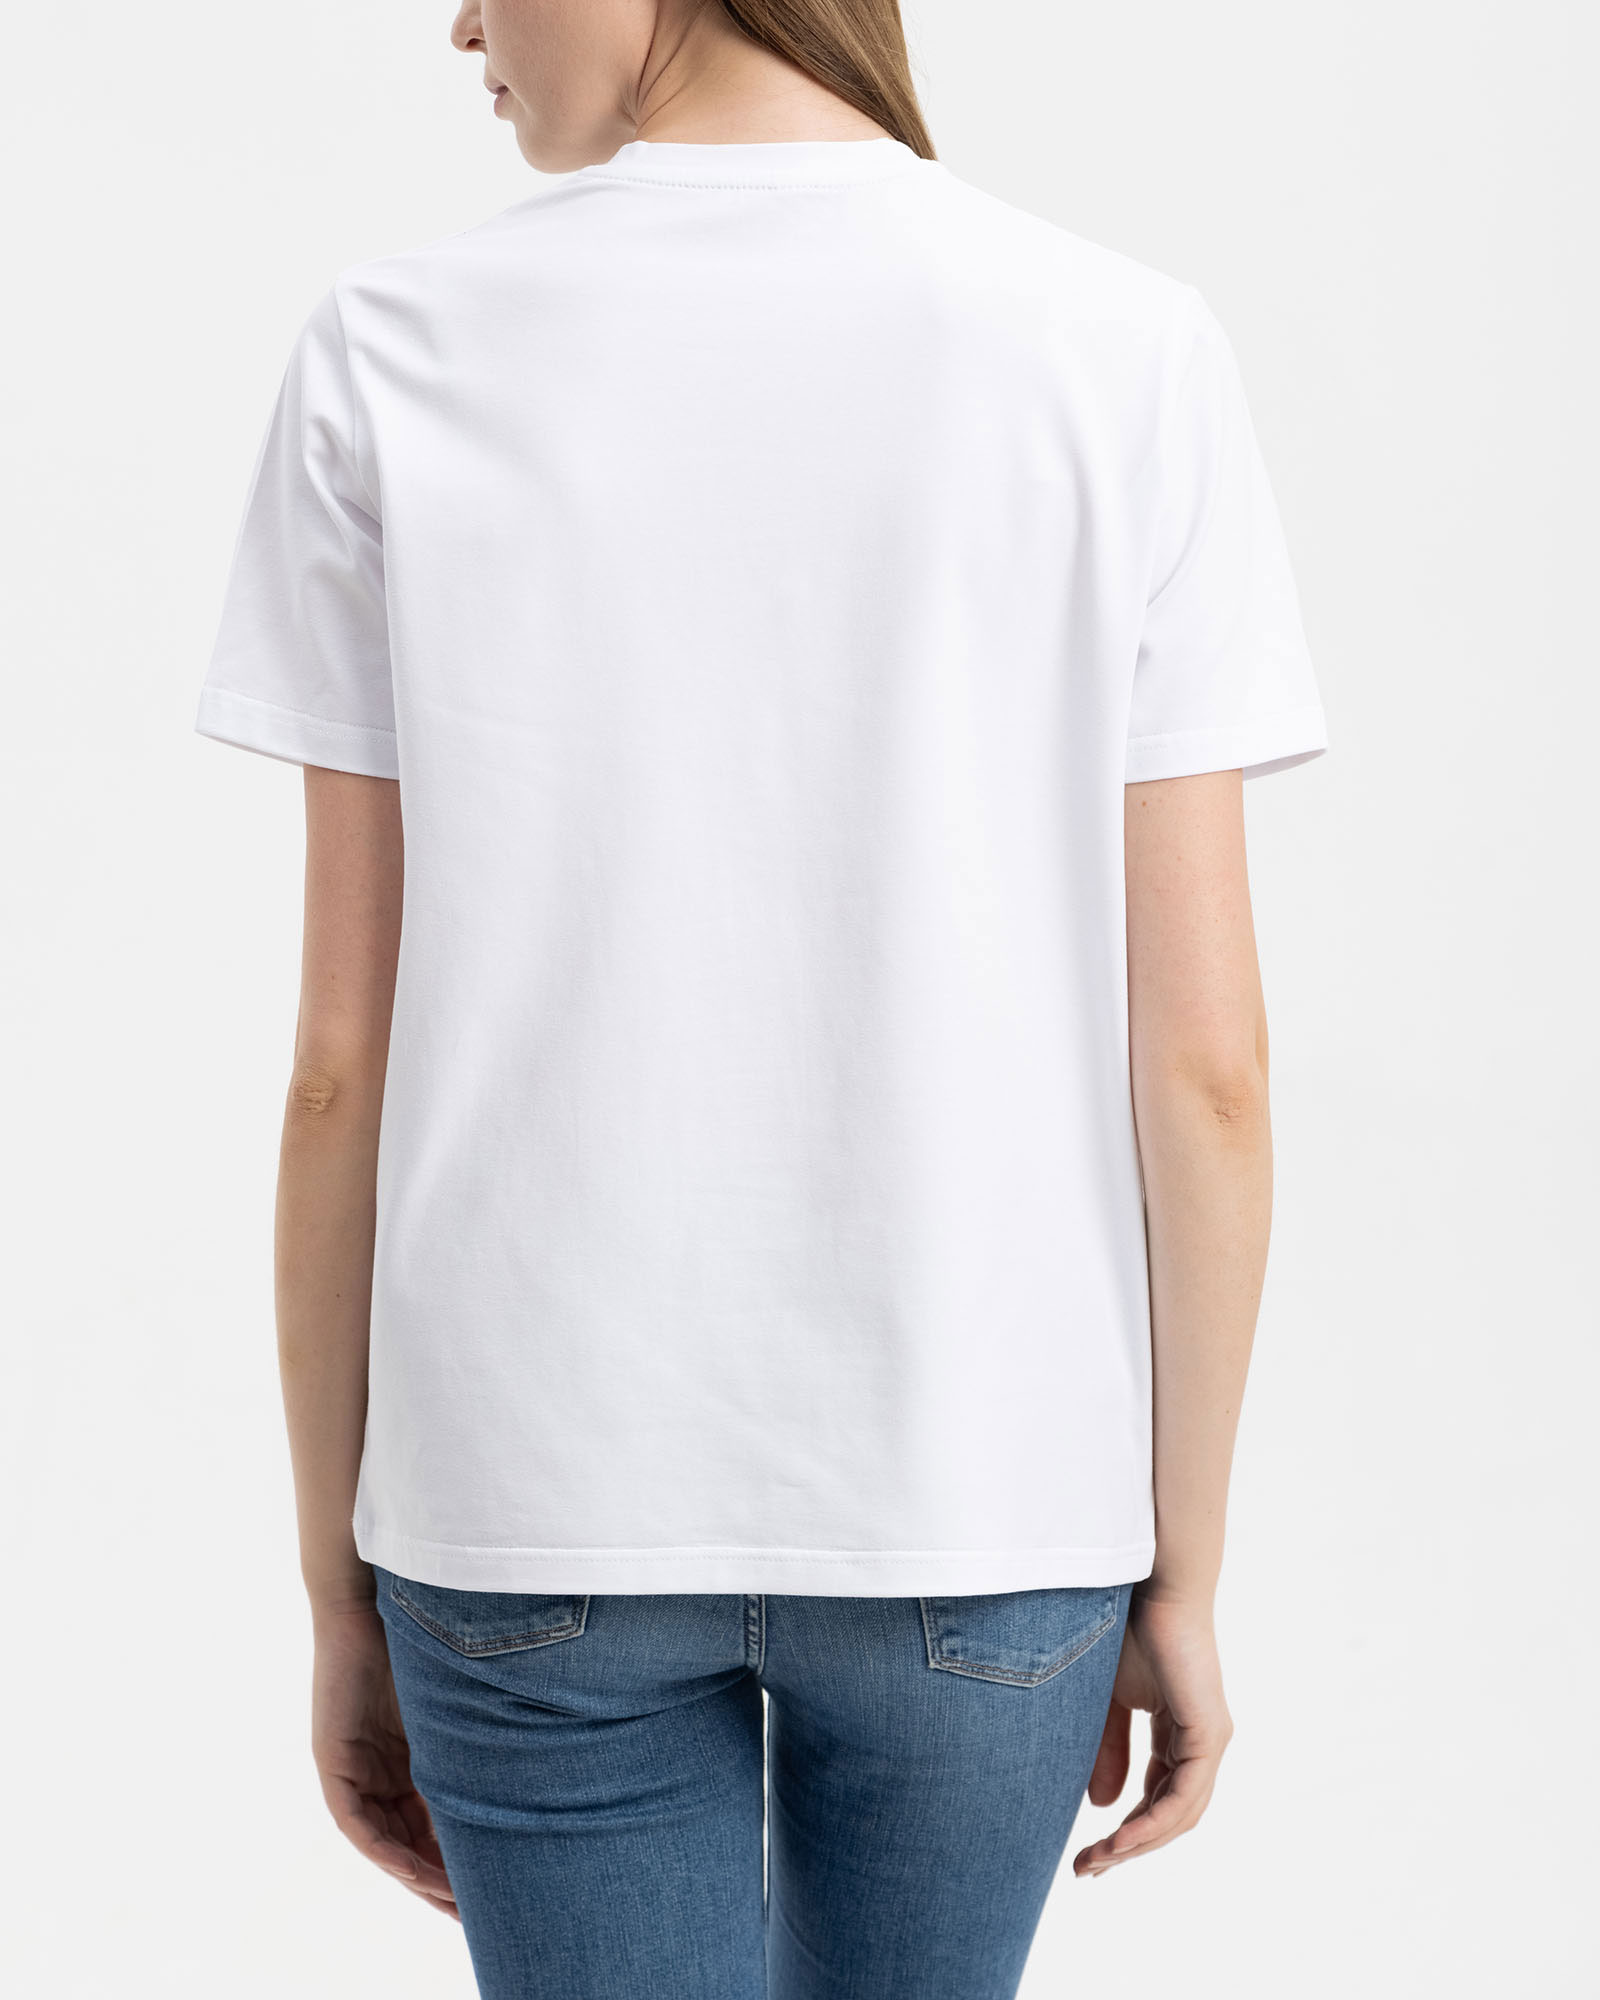 Женская хлопковая футболка classic белая - фото 2